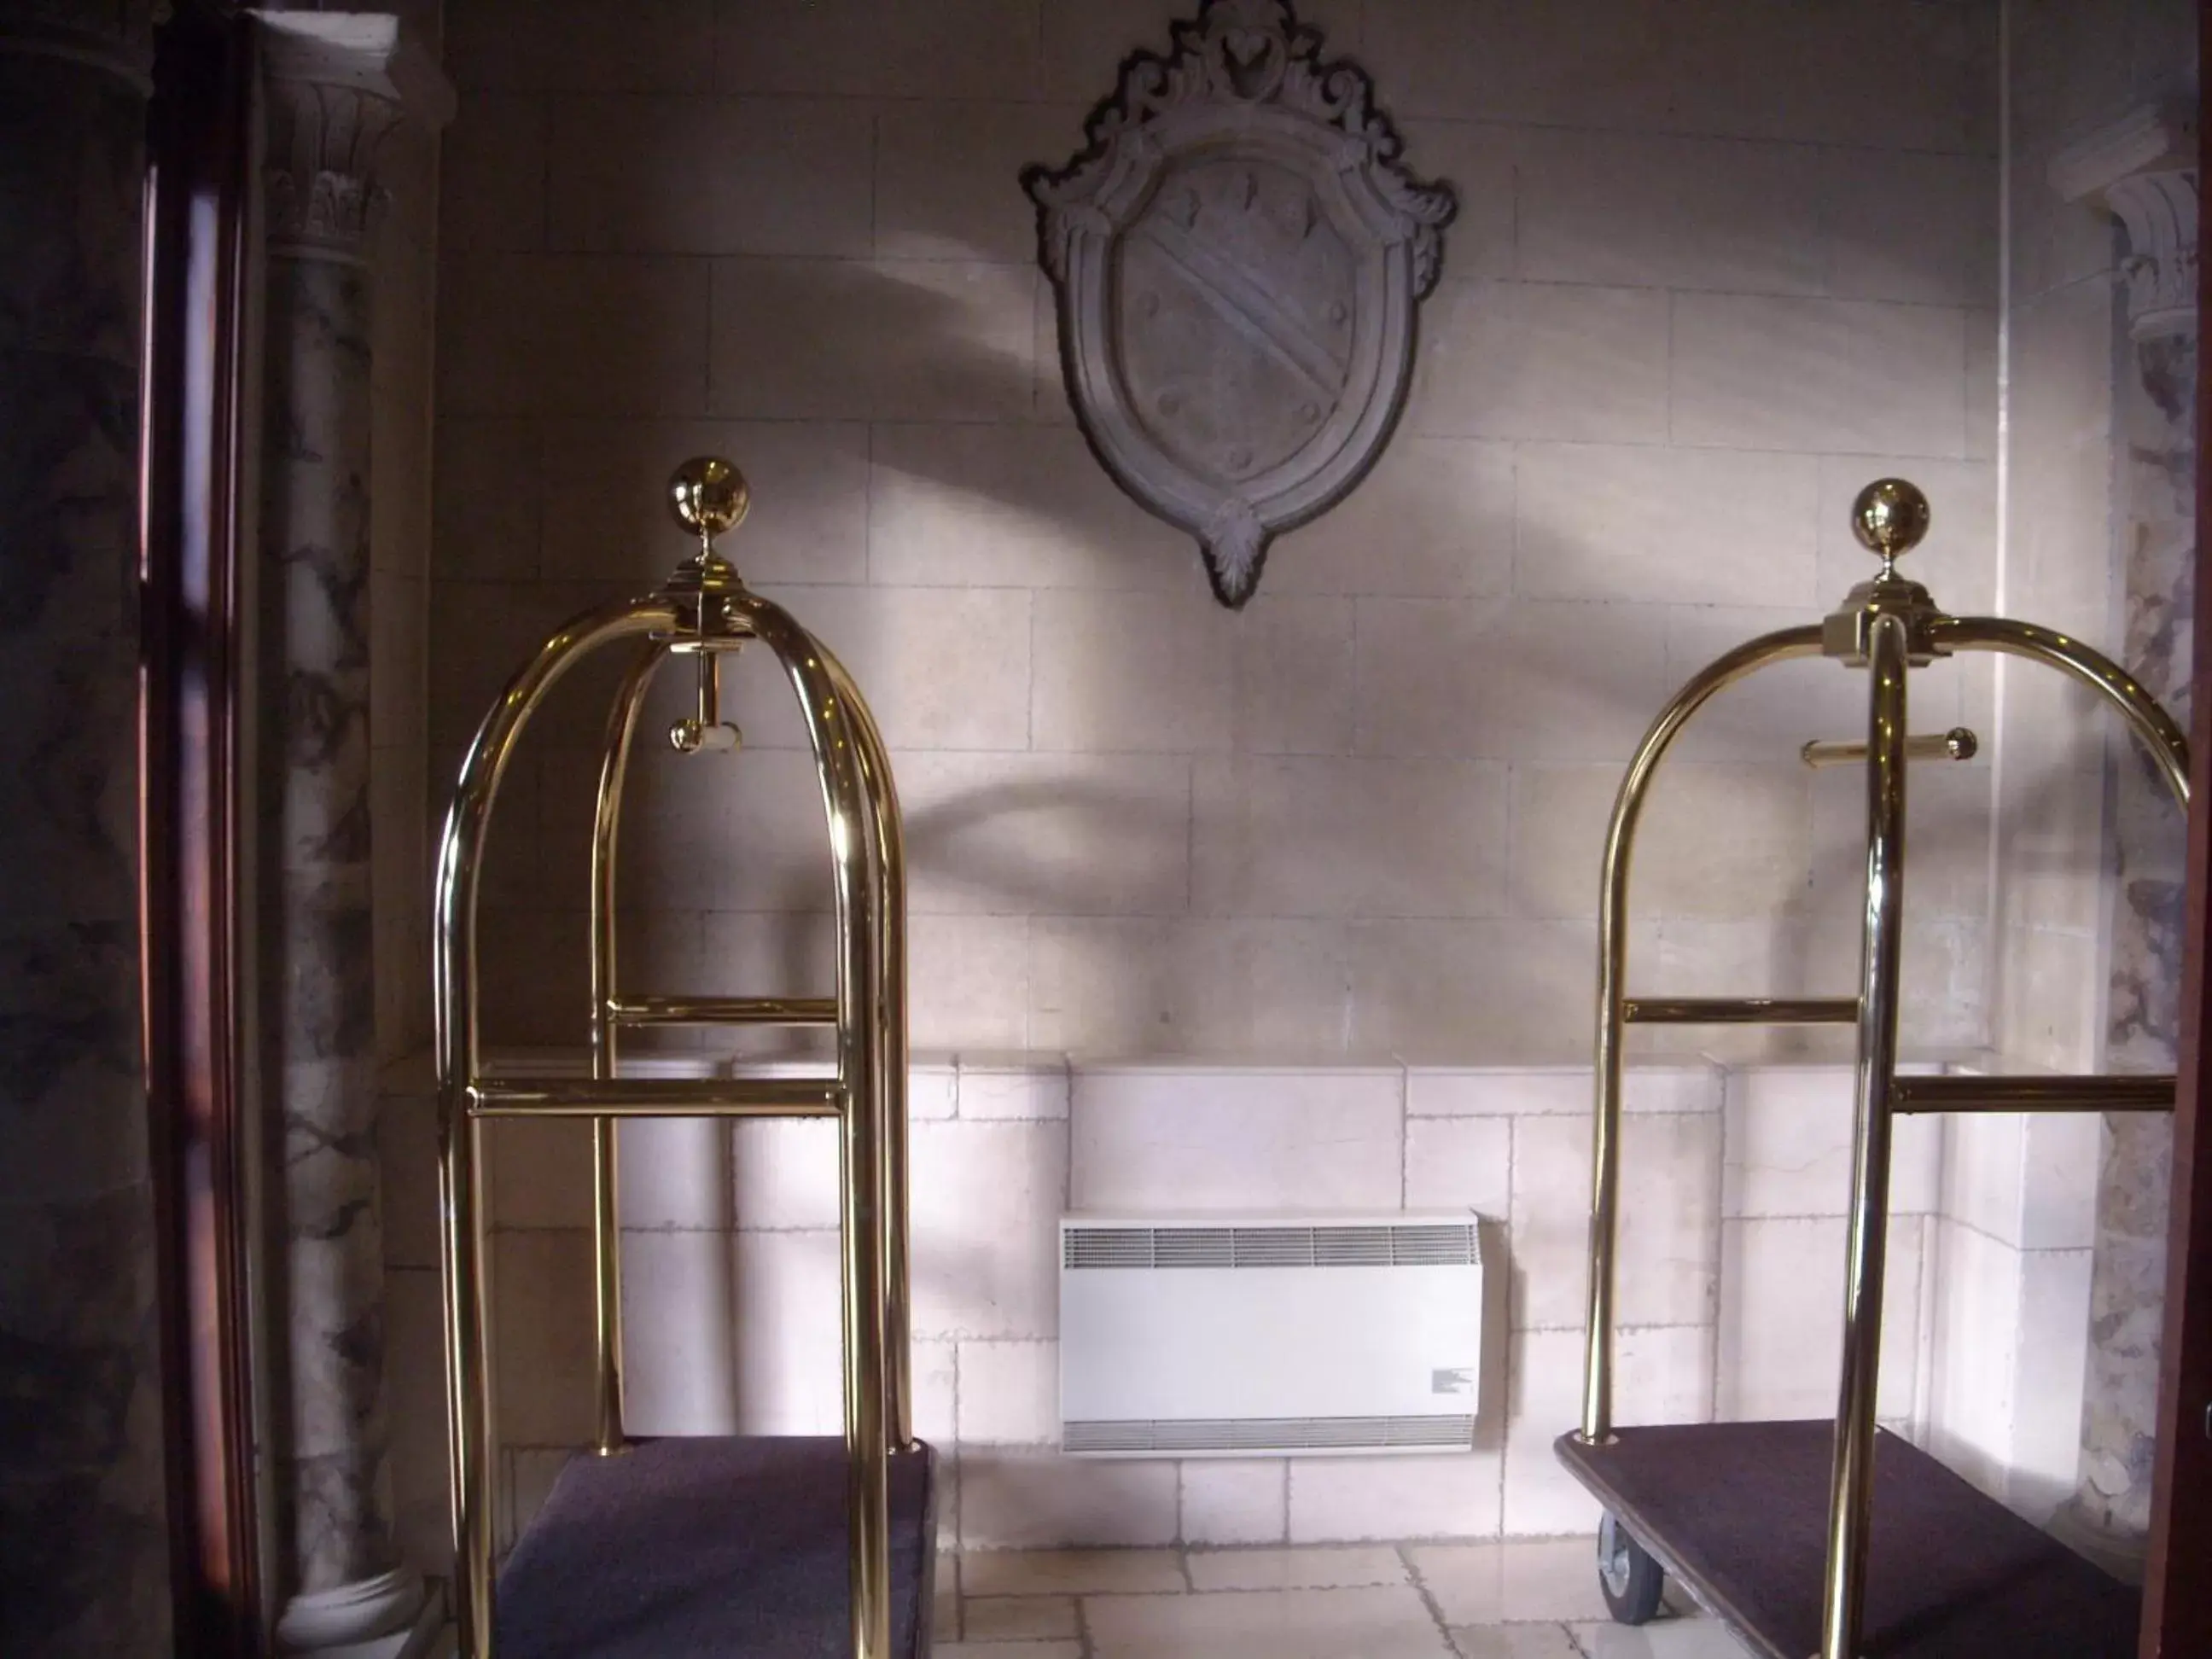 Lobby or reception, Bathroom in Hotel Brossard